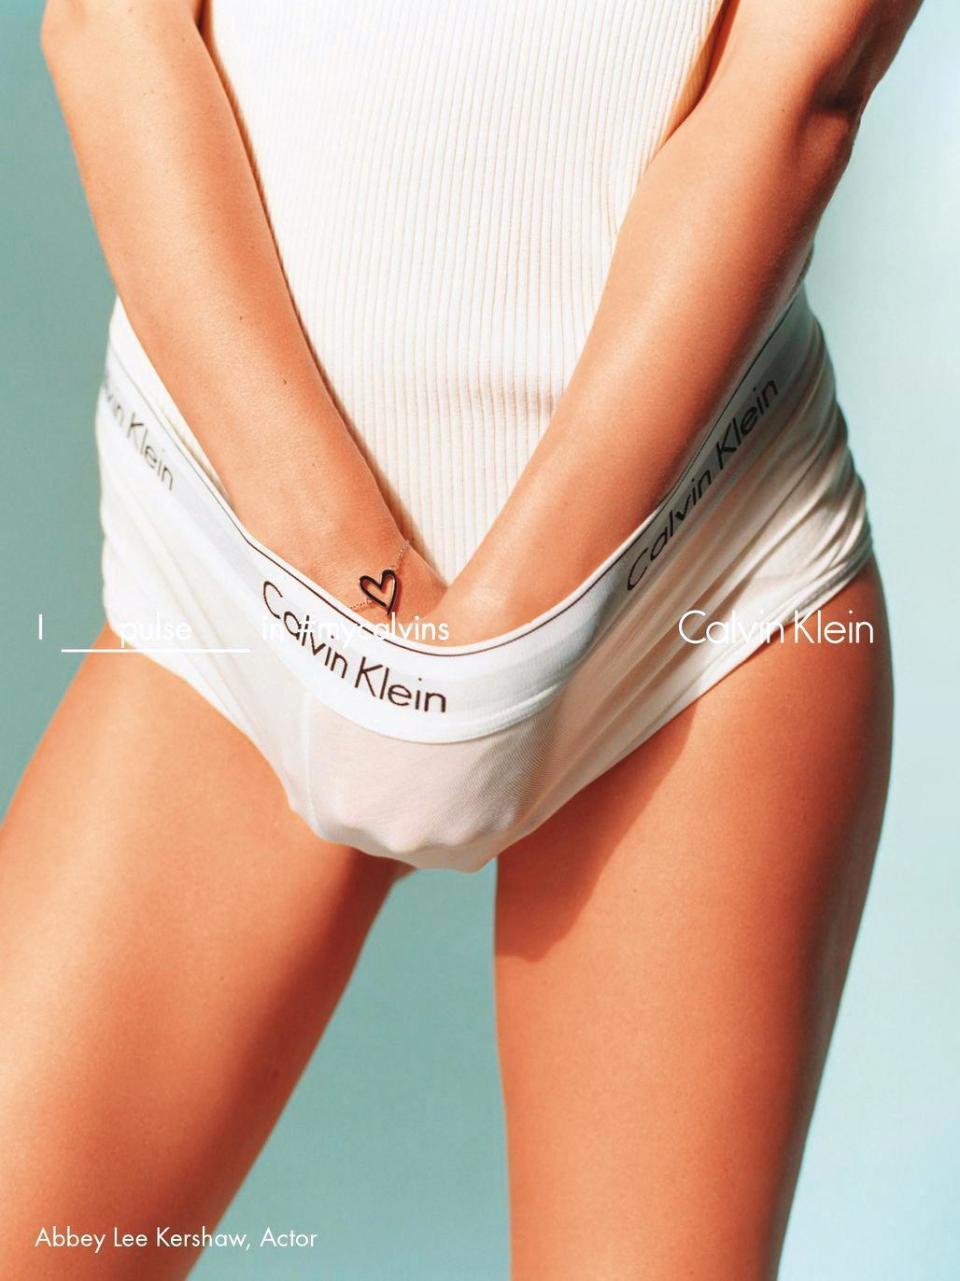 澳洲超級名模艾比科肖2016年的廣告，證明即使一件乾淨純白的內褲，也可以很情欲。